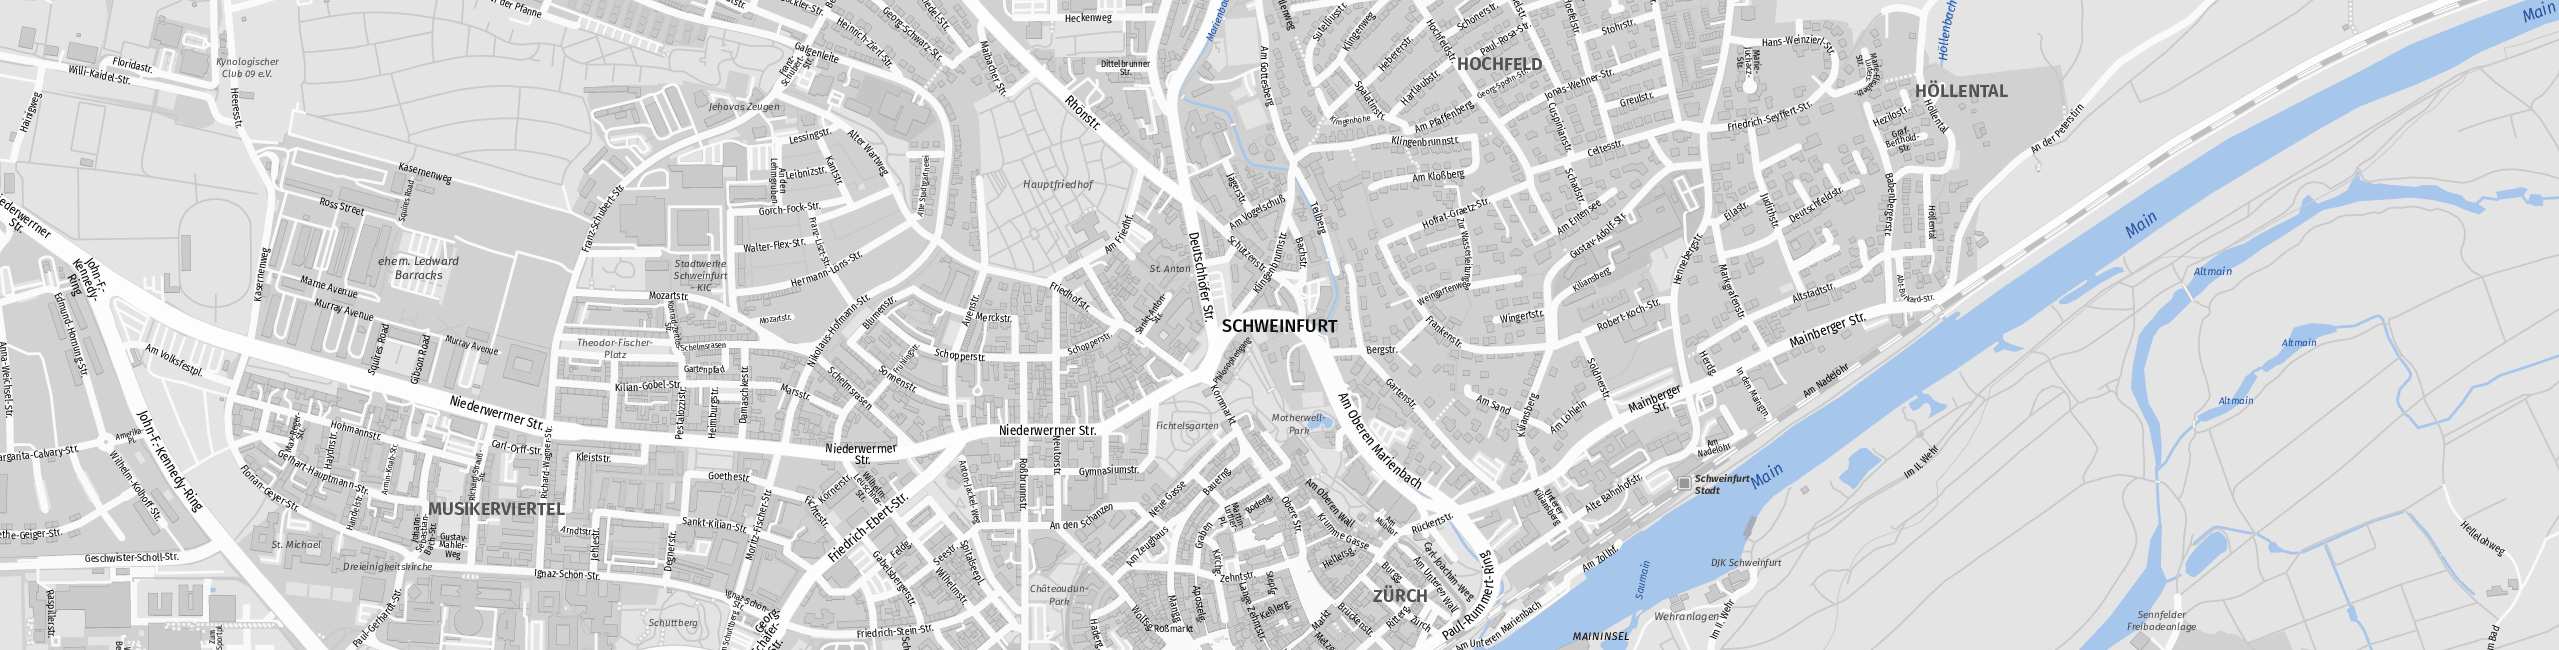 Stadtplan Schweinfurt zum Downloaden.